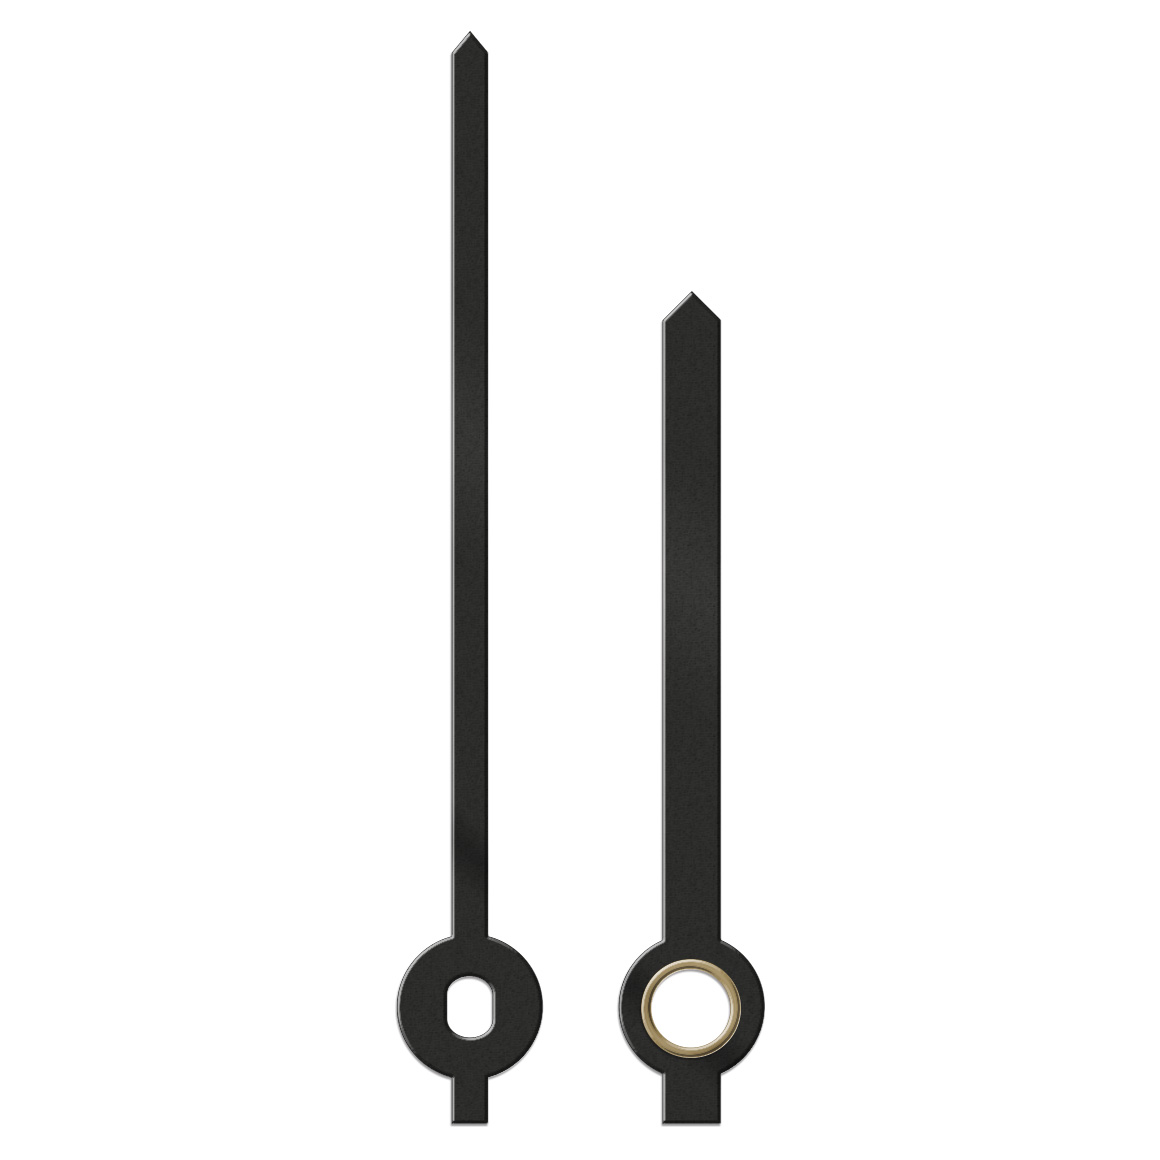 Paire d'aiguilles, baton pointu, longueur 67
mm, aluminium, noir, pour grandes horloges